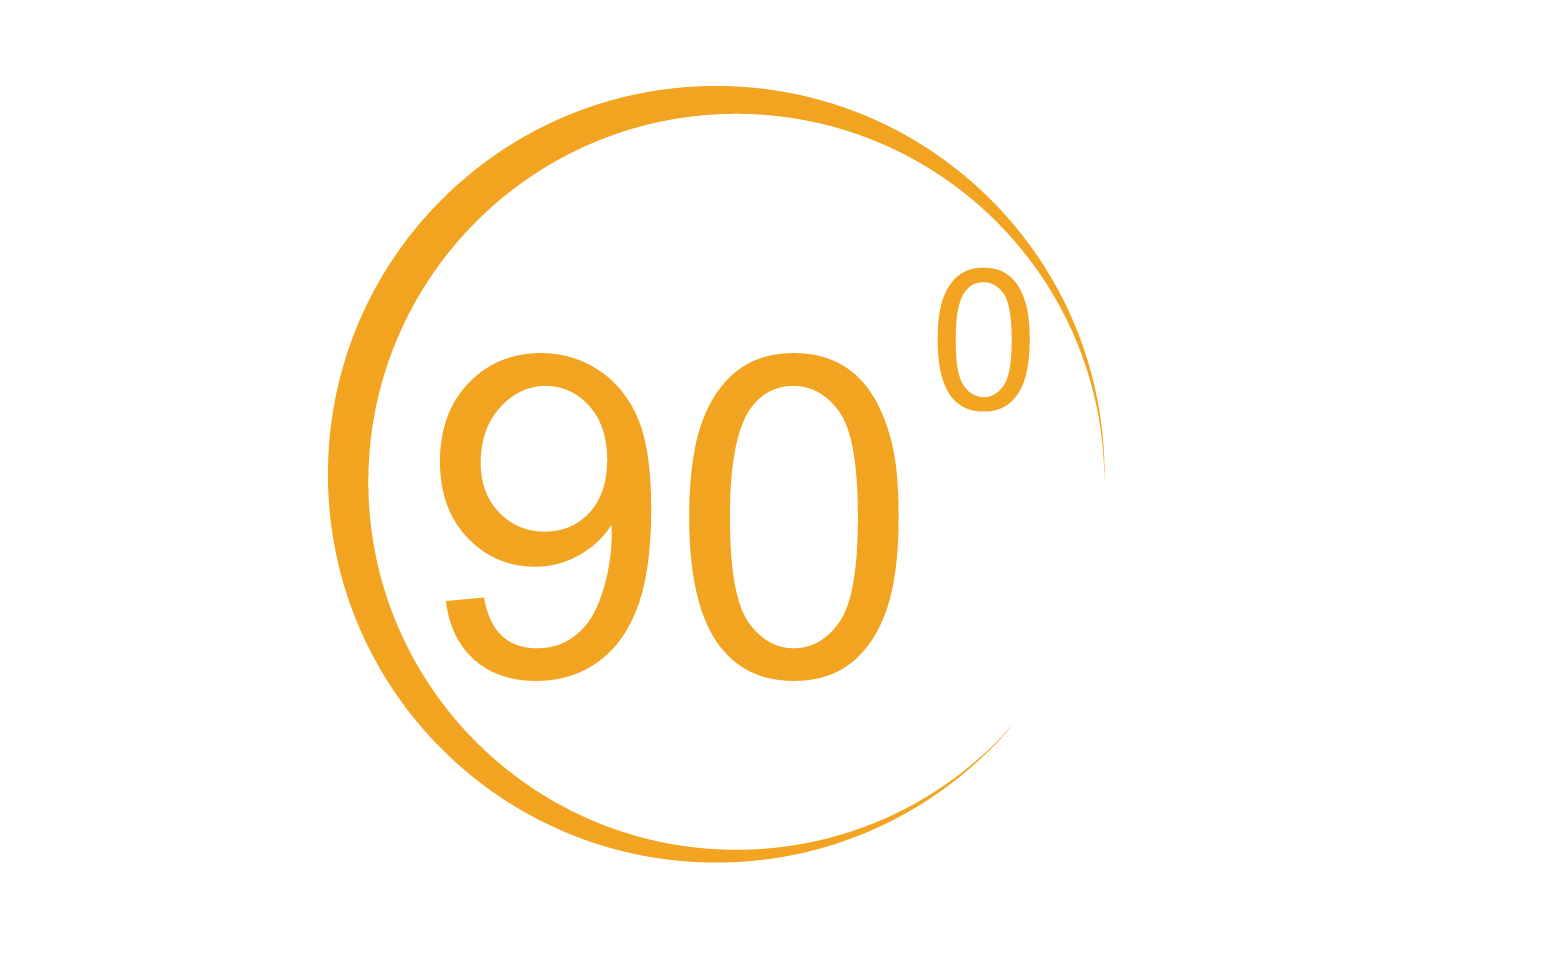 90 degree angle rotation icon symbol logo v1